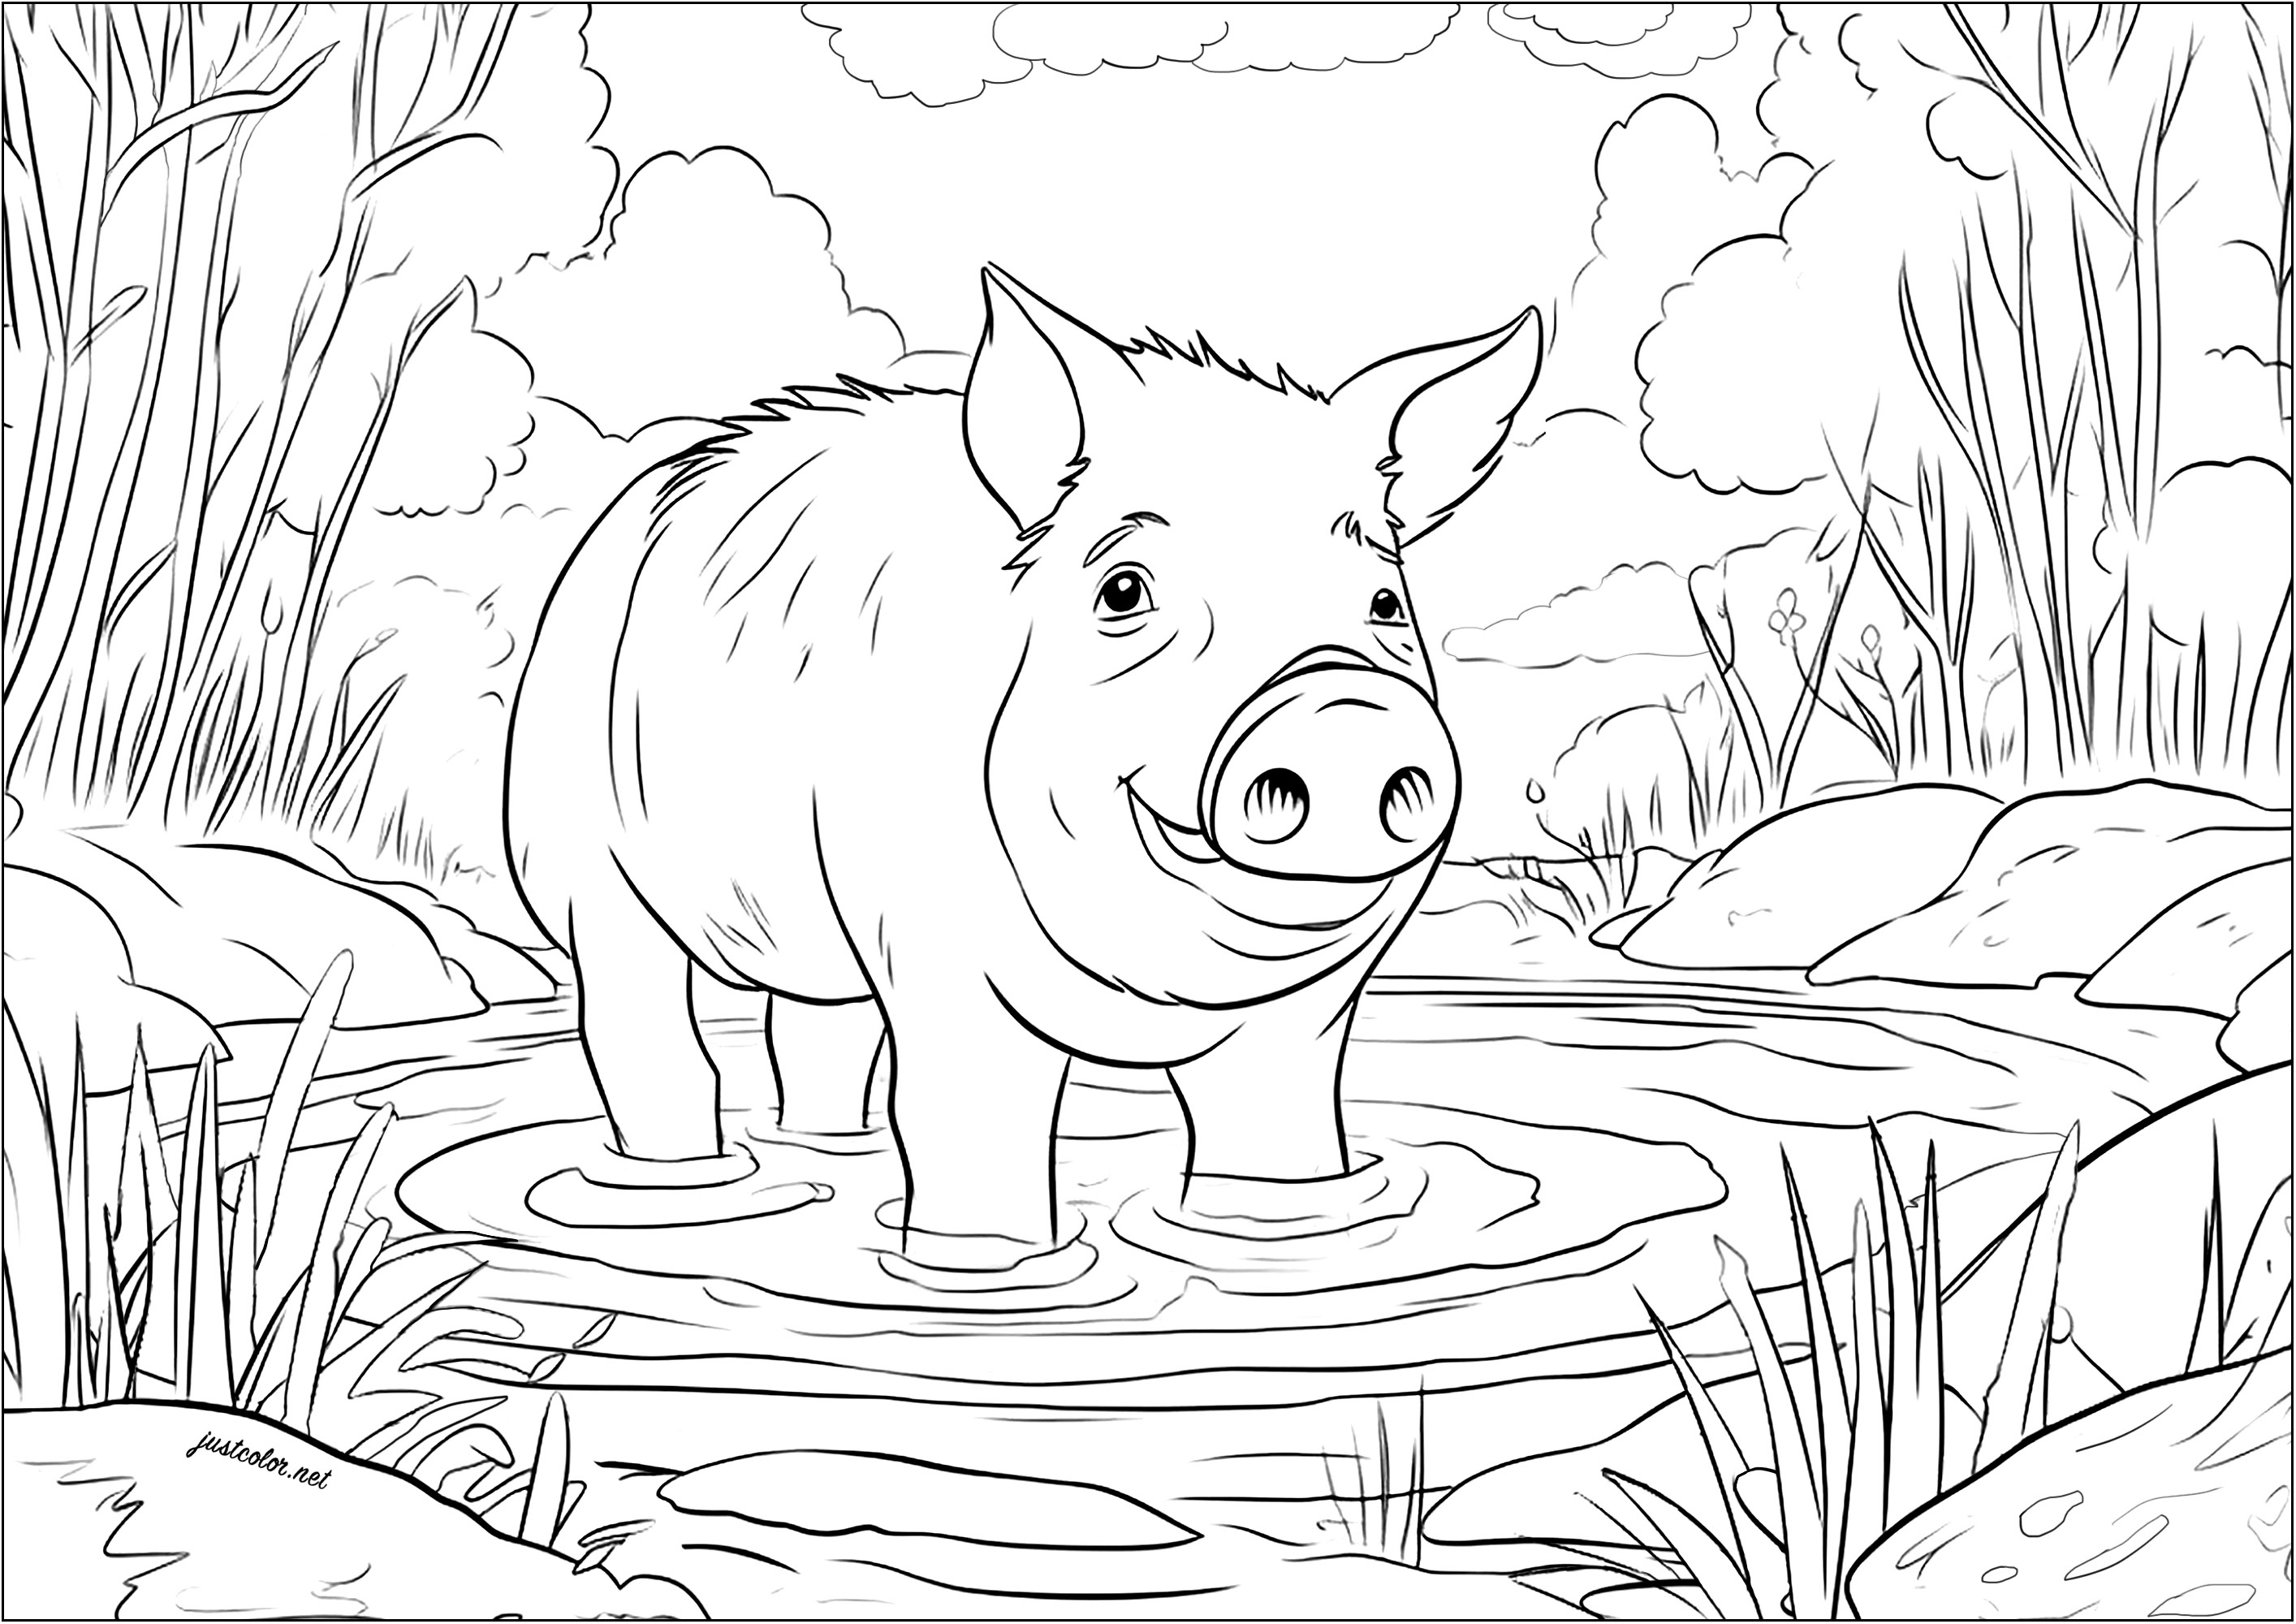 Maiale in una pozza di fango. Colorate questo simpatico maiale che sembra così felice di immergere le zampe e rinfrescarsi in questa piscina fangosa